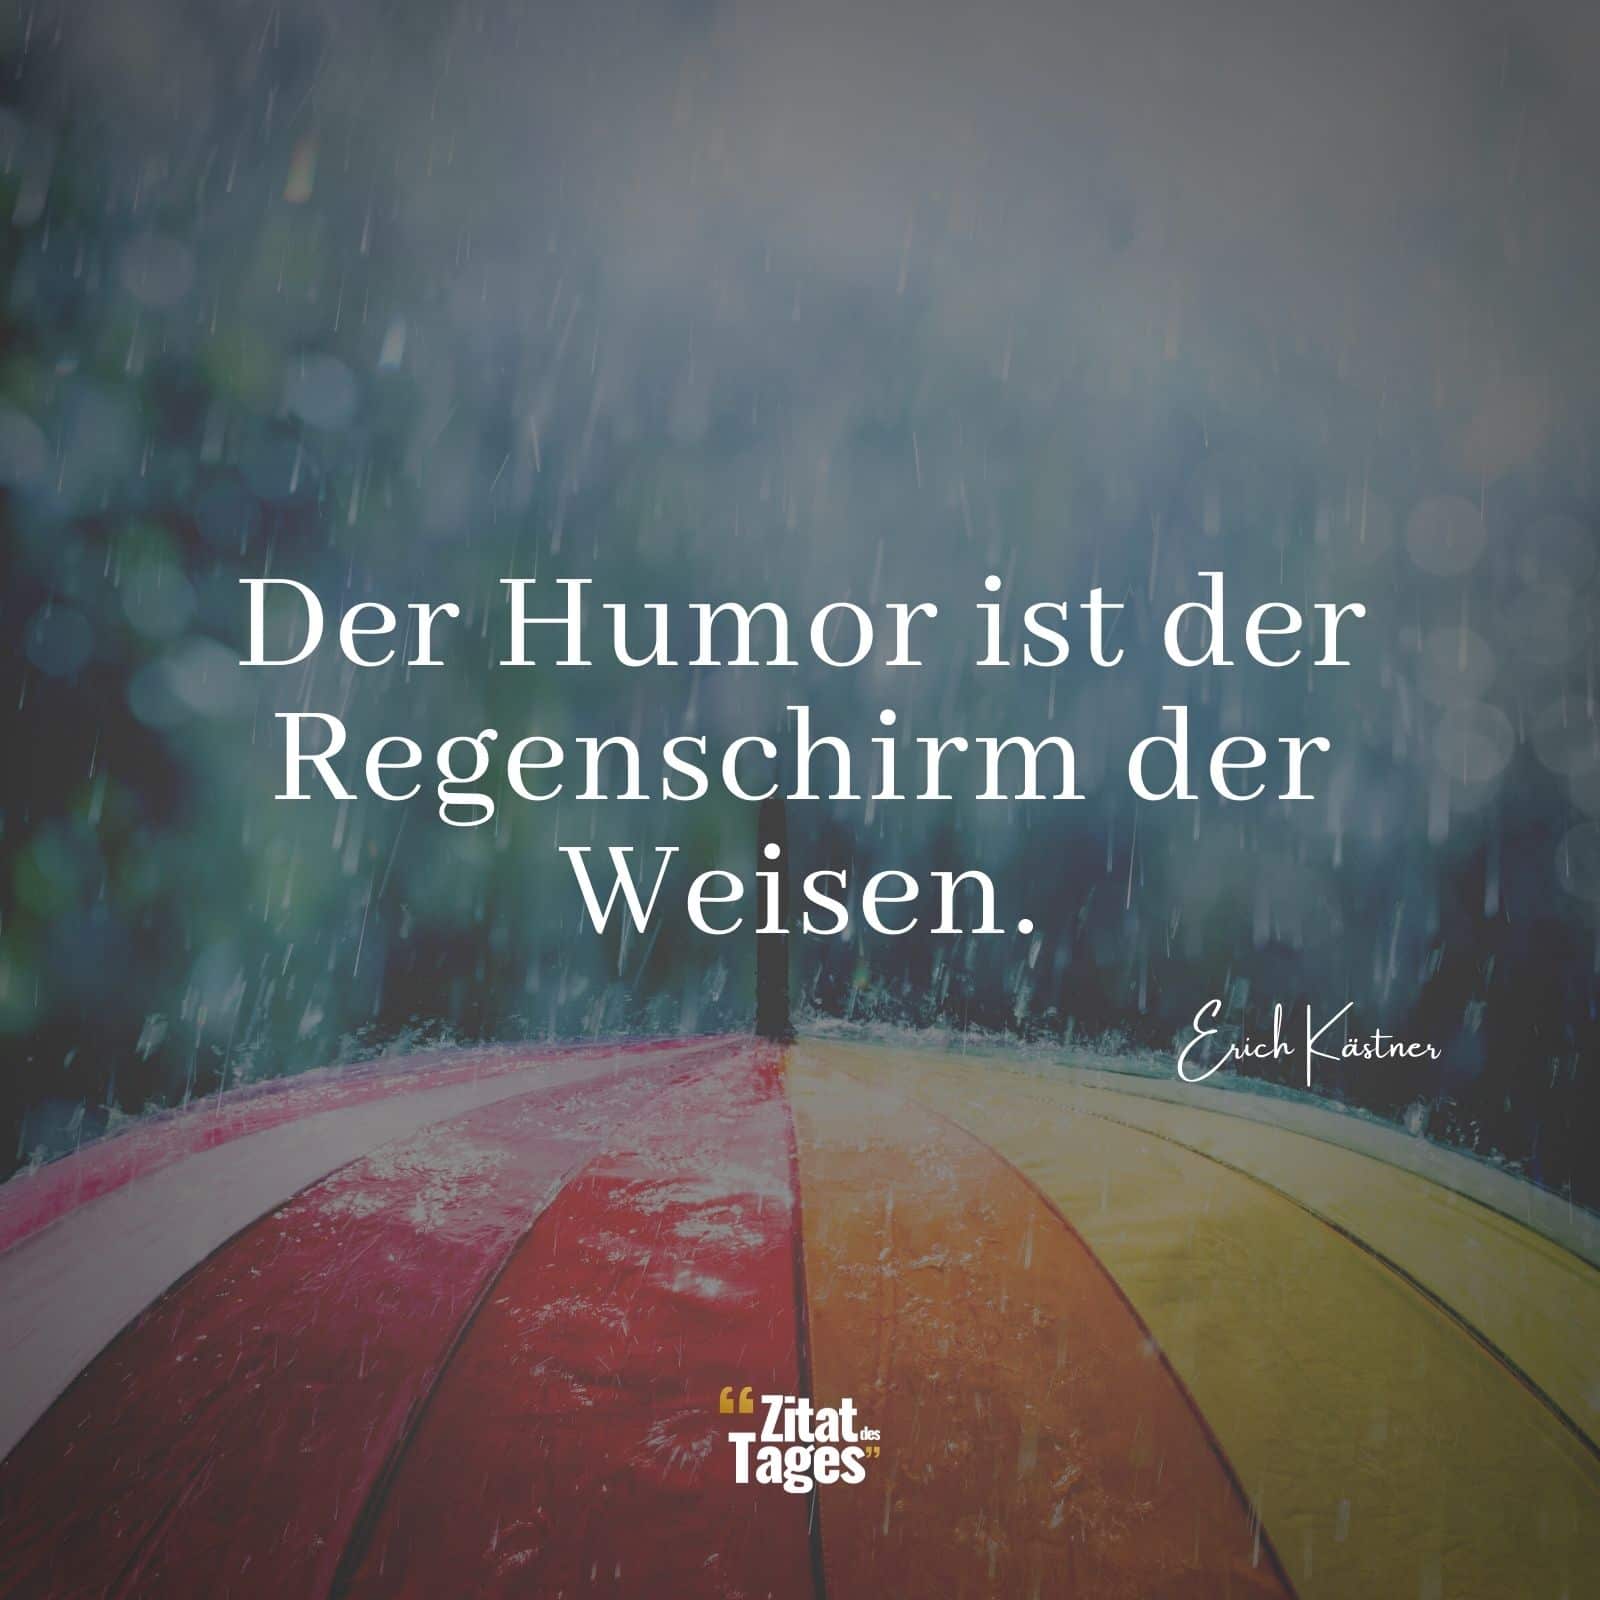 Der Humor ist der Regenschirm der Weisen. - Erich Kästner